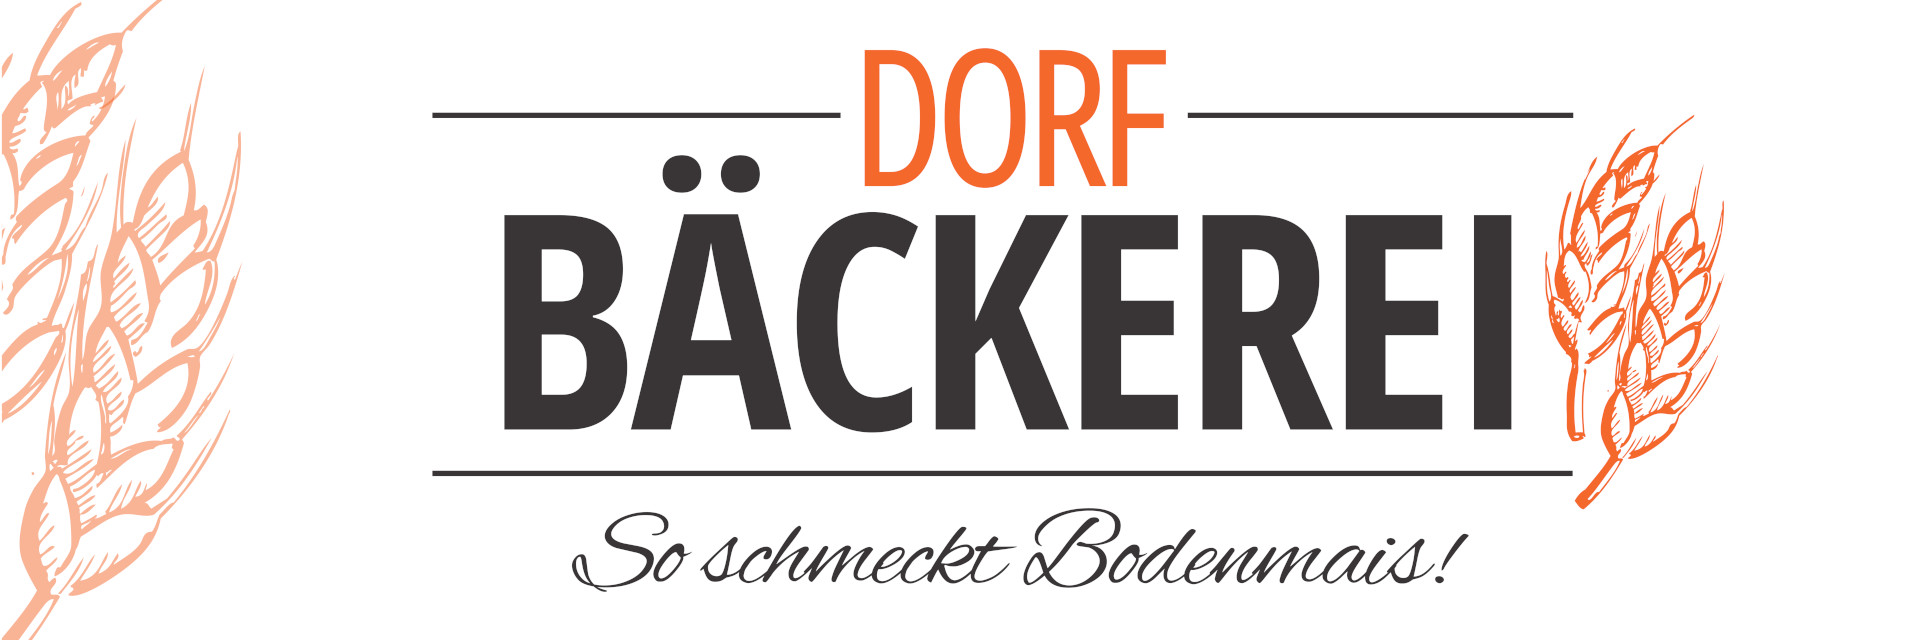 Dorfbaecker